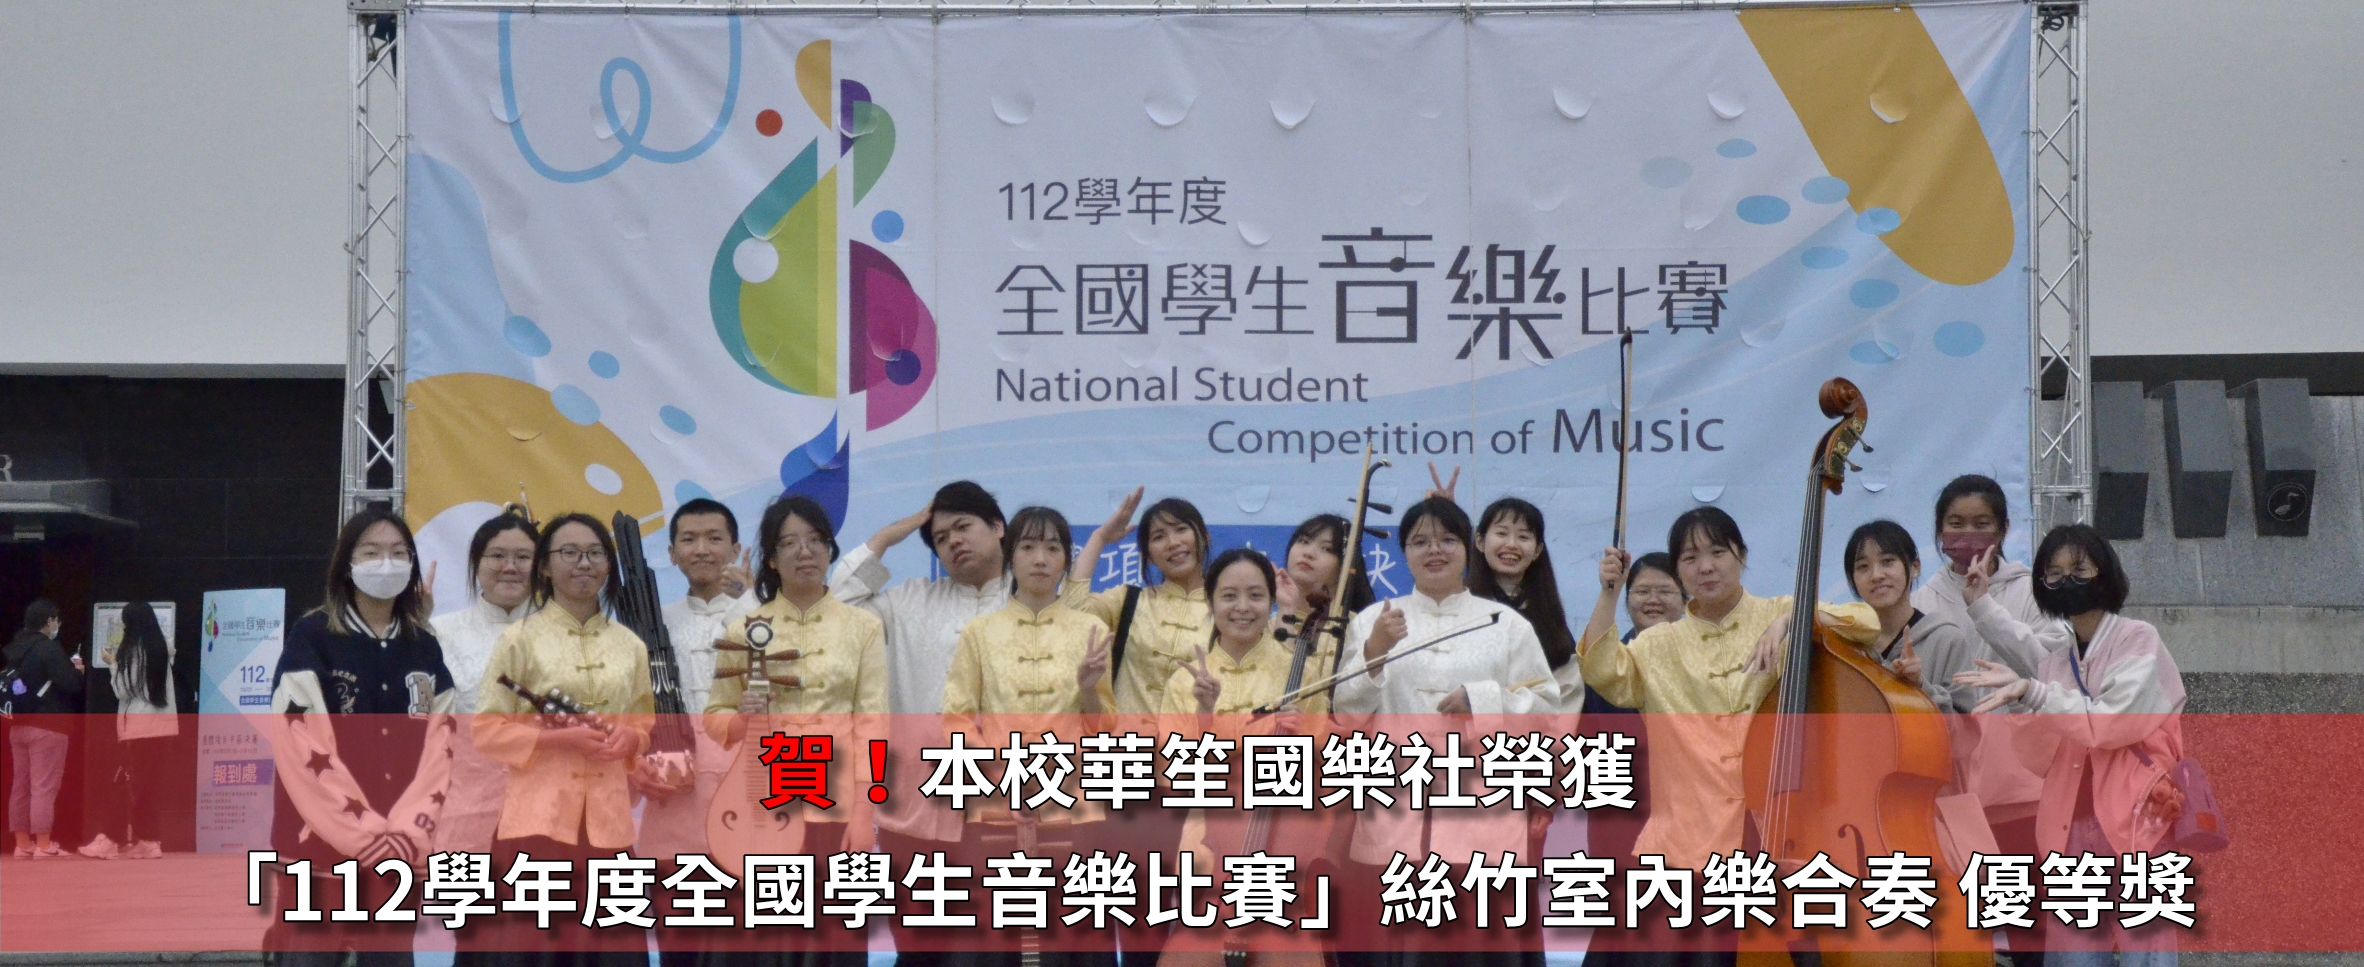 華笙國樂社榮獲「112學年度全國學生音樂比賽」絲竹室內樂合奏 優等獎